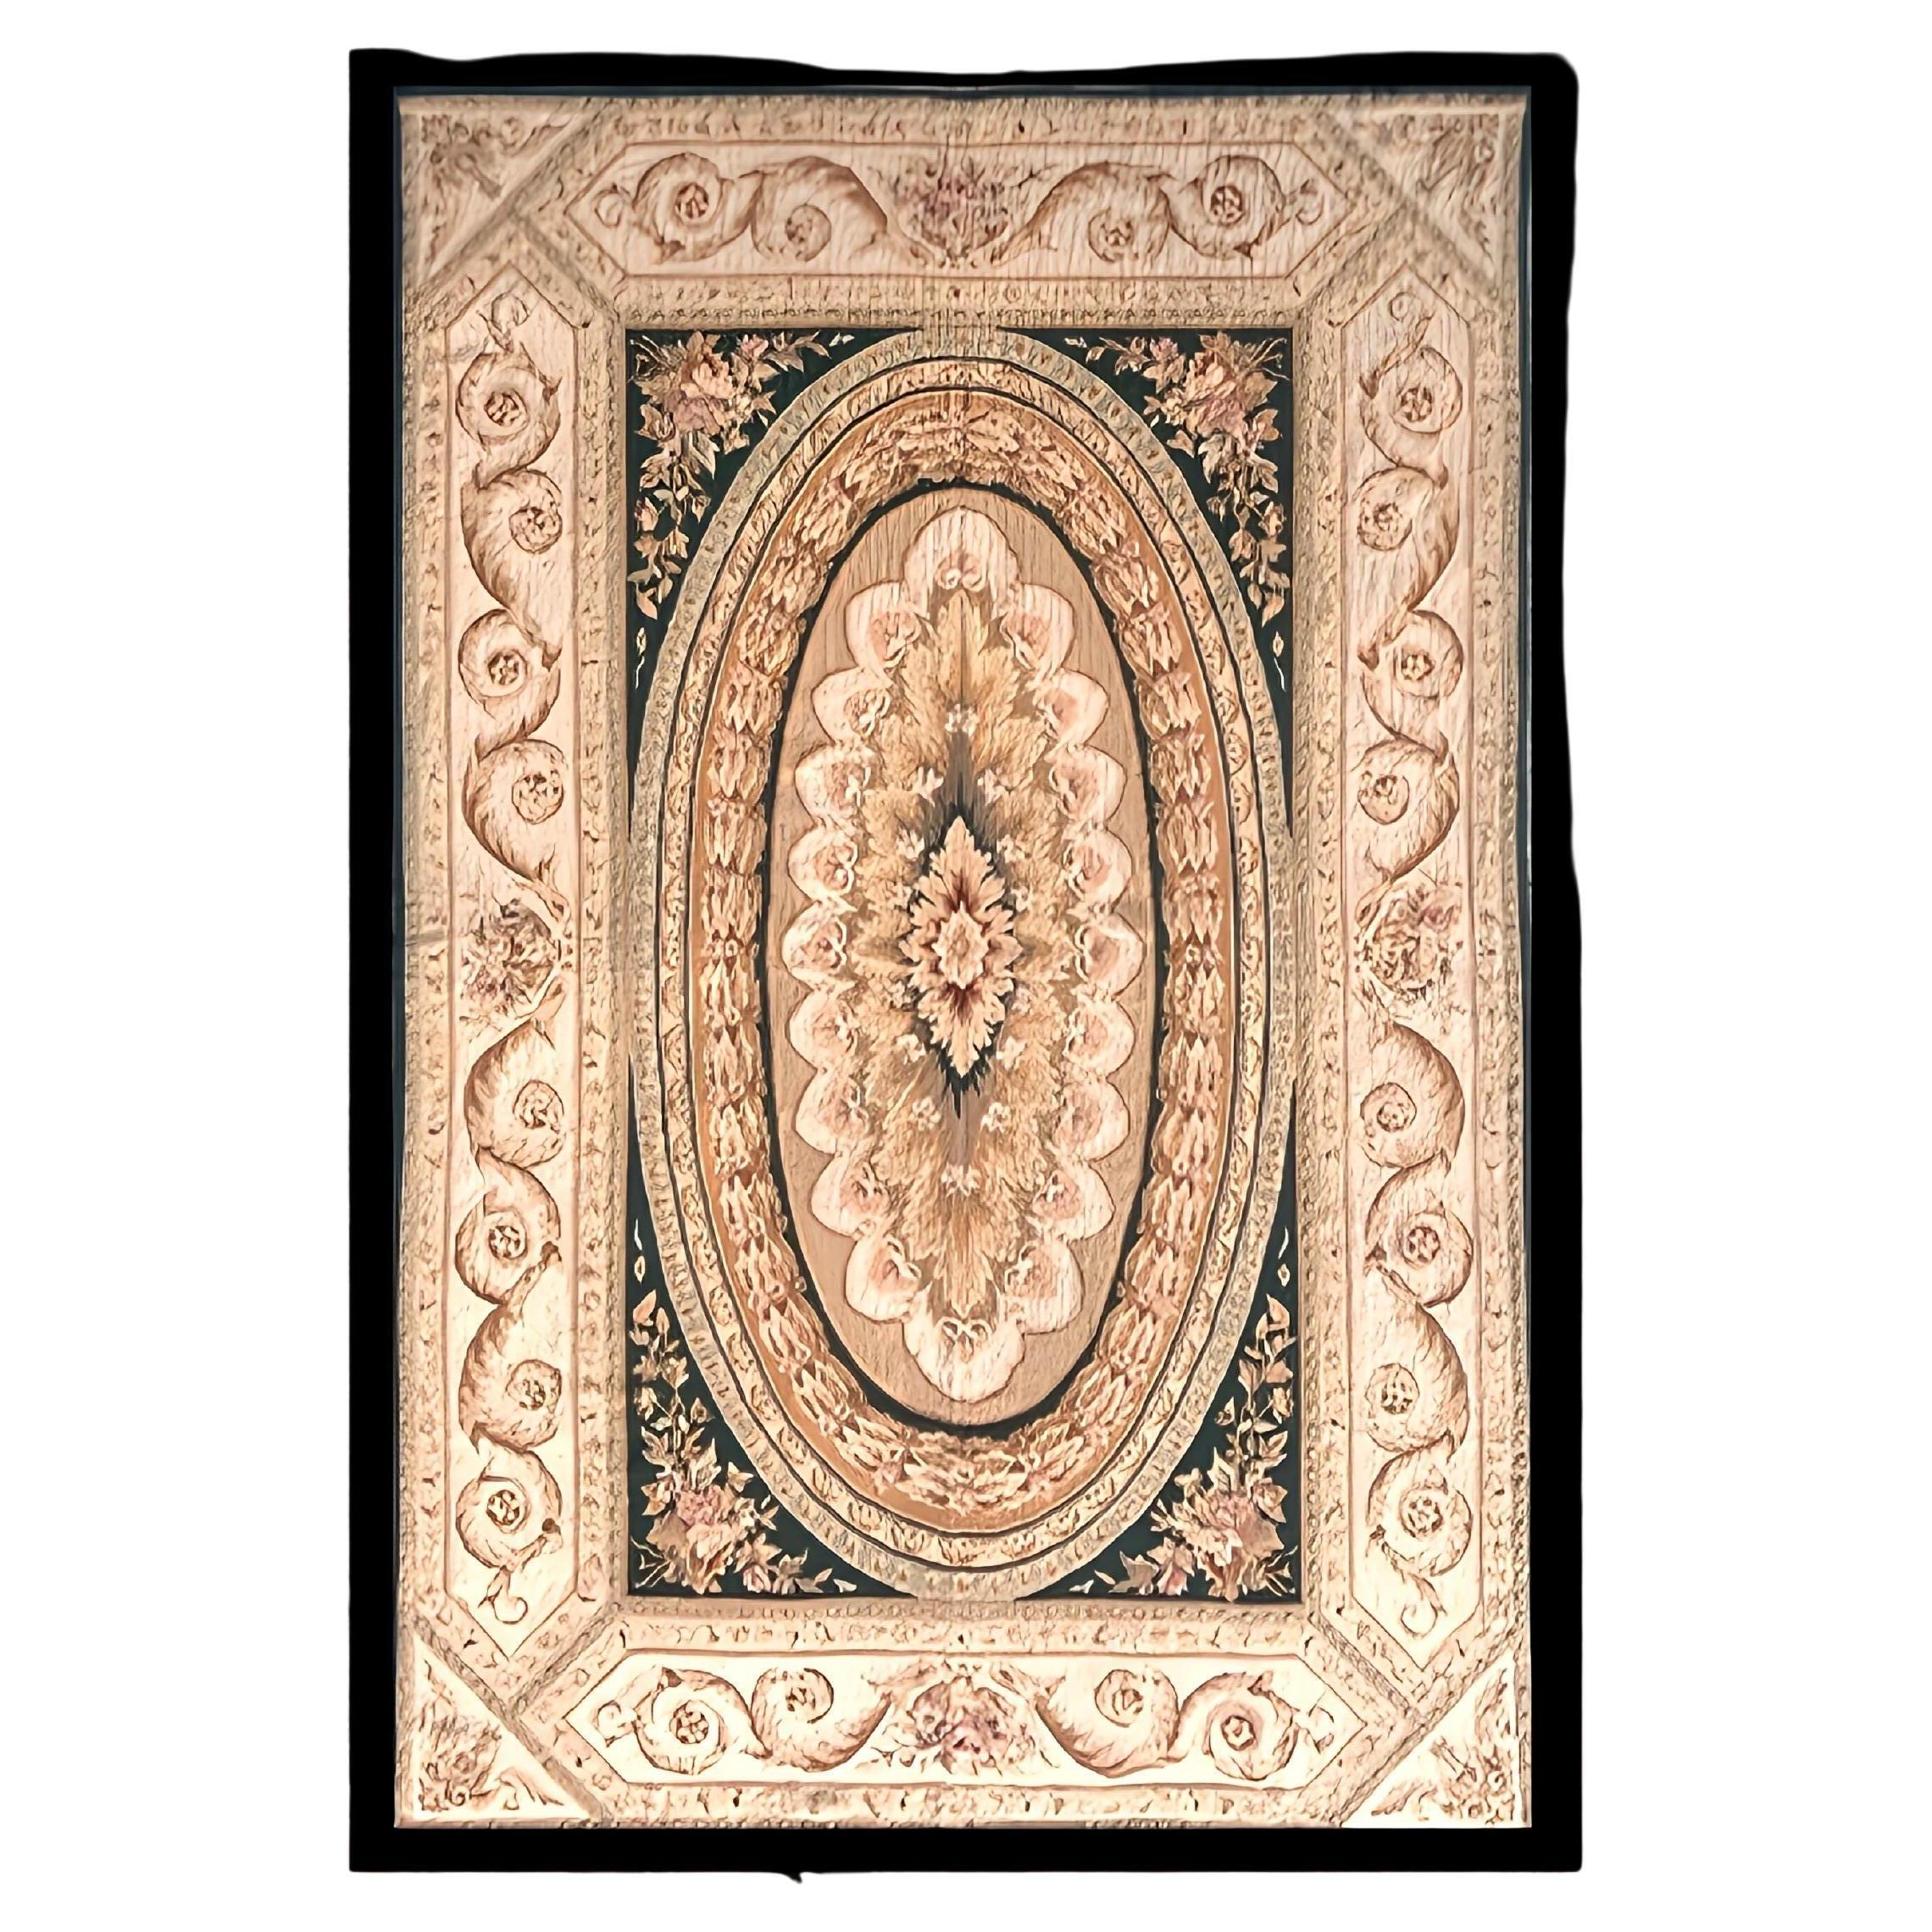 Teppich mit geknüpften Nähten im Stil von Aubusson